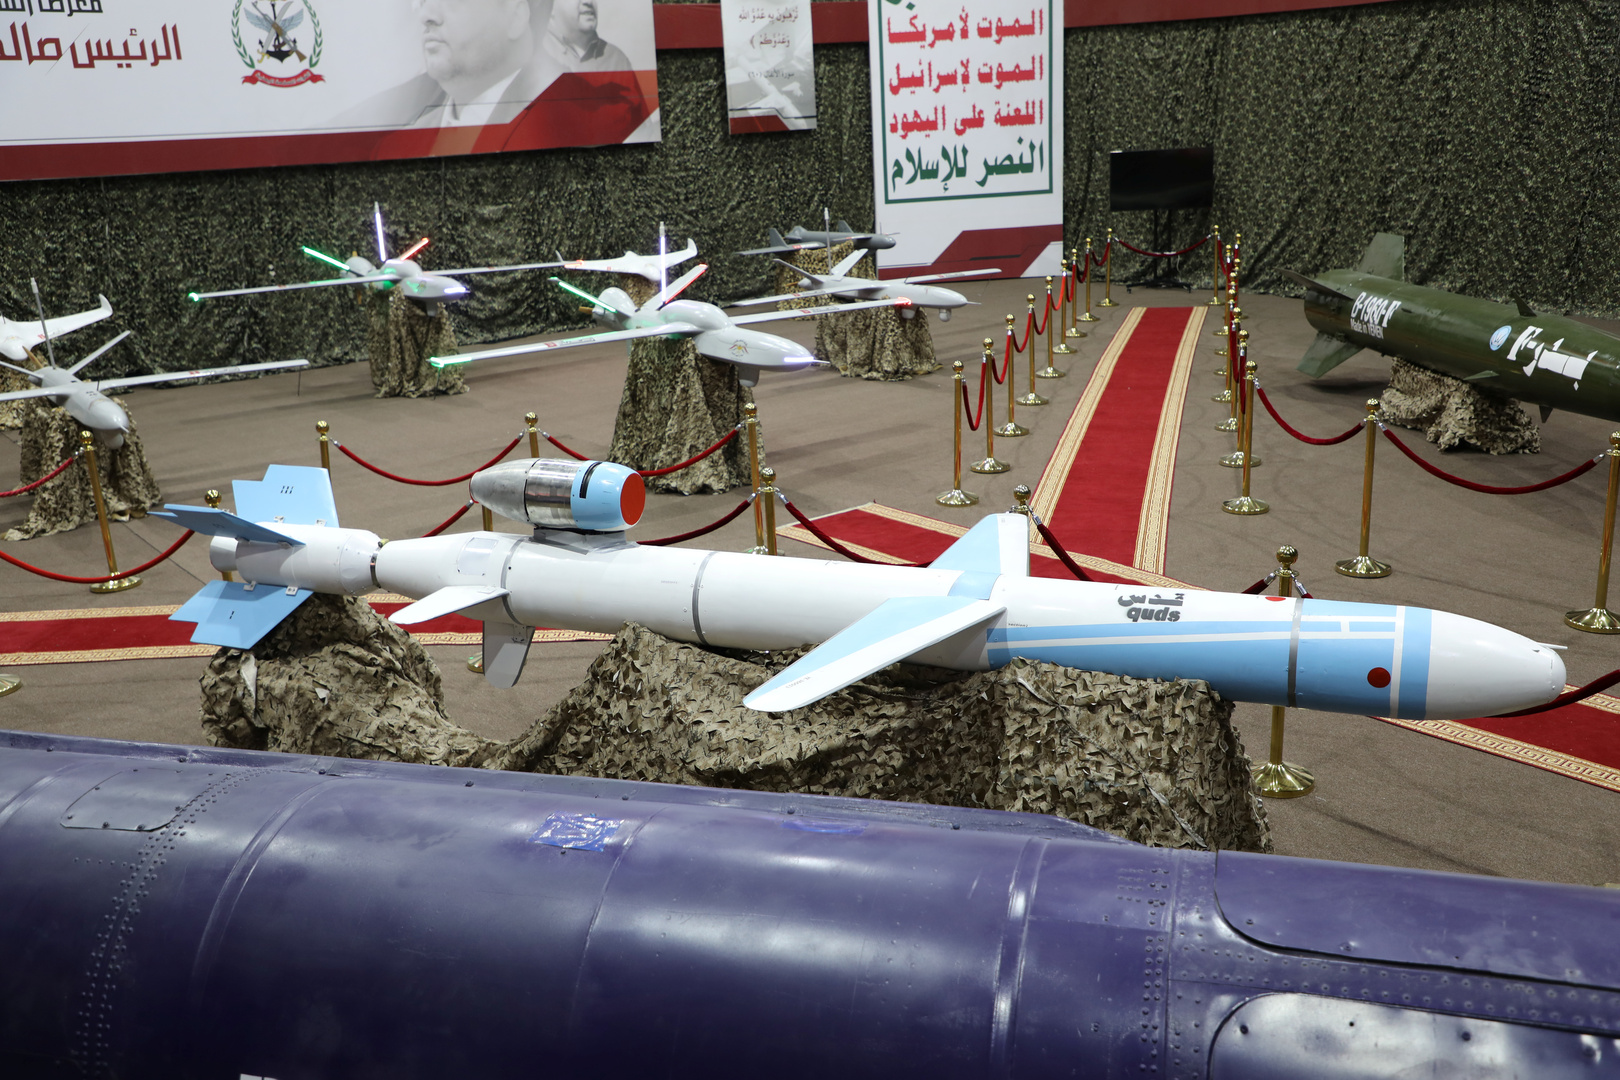 التحالف العربي يعلن عن اعتراض طائرة مسيرة مفخخة أطلقها الحوثيون نحو السعودية